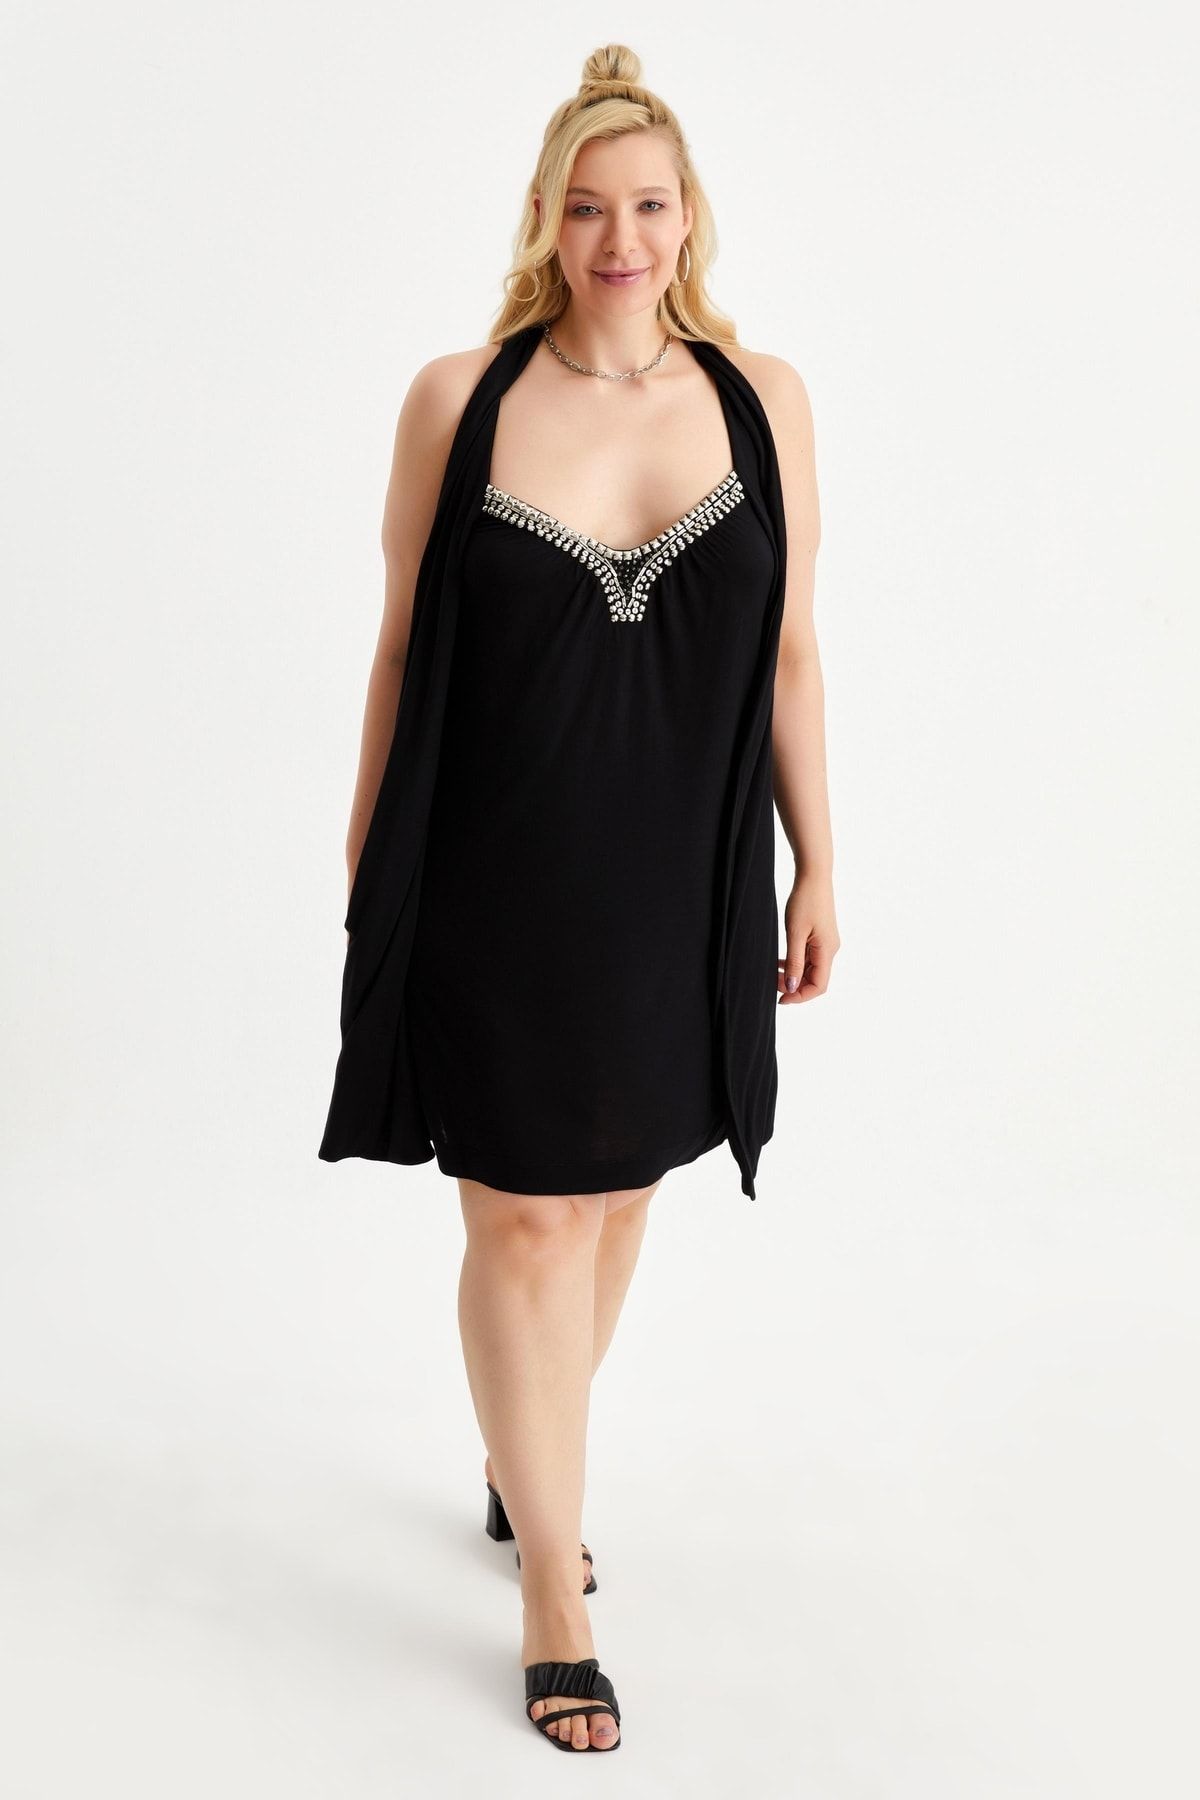 Hanna's Kadın Siyah Göğüs Dekolteli Boncuk Işlemeli Örme Büyük Beden Elbise